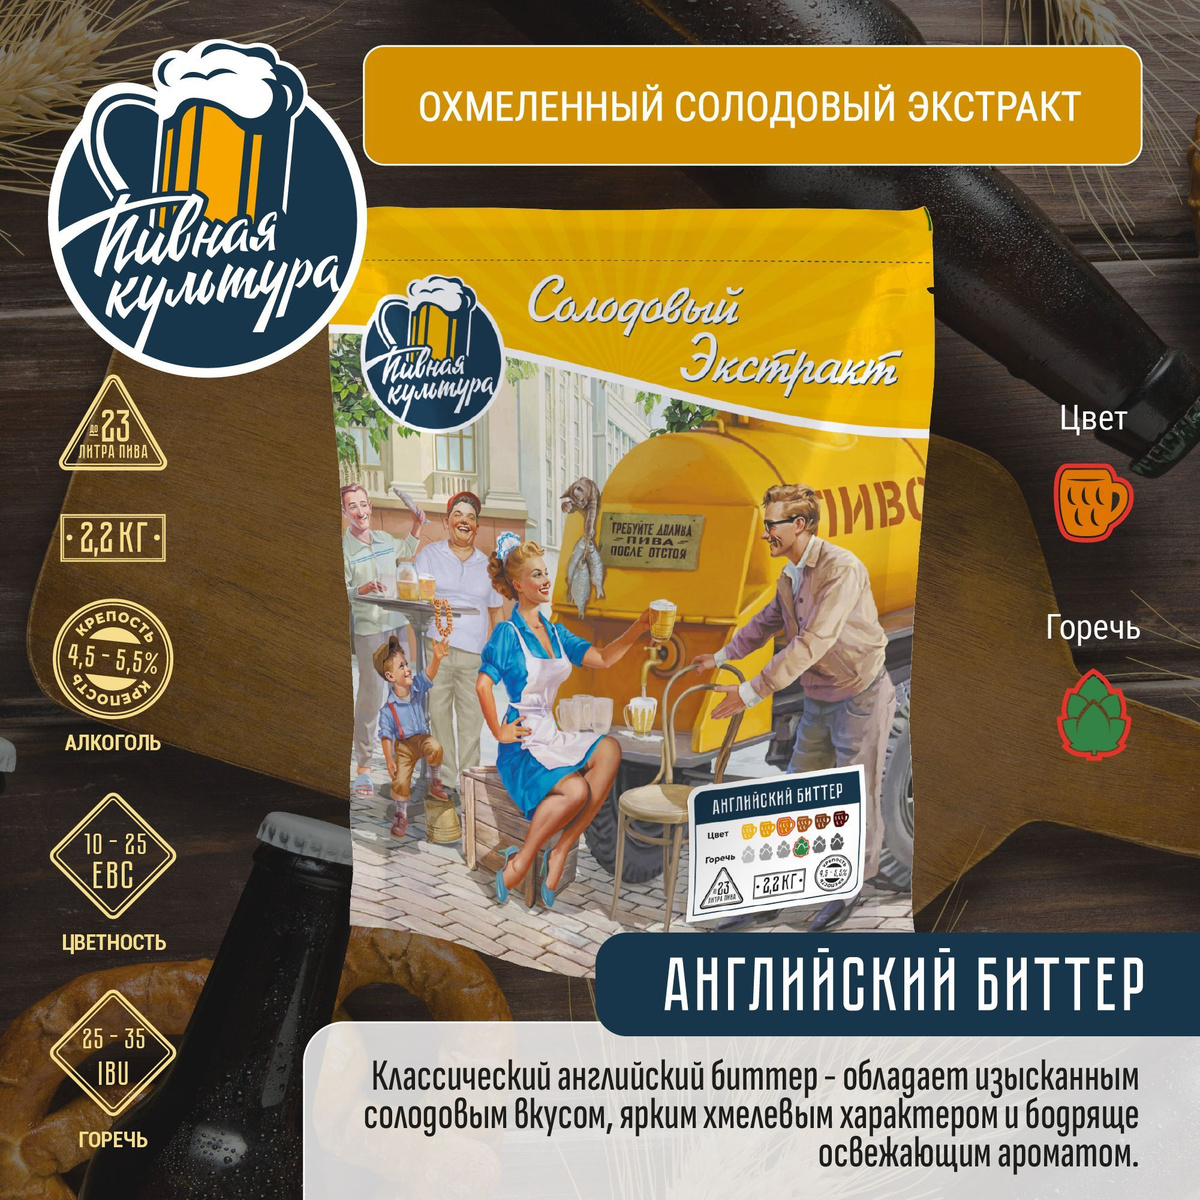 https://www.ozon.ru/product/ohmelennyy-solodovyy-ekstrakt-pivnaya-kultura-angliyskiy-bitter-1148245101/